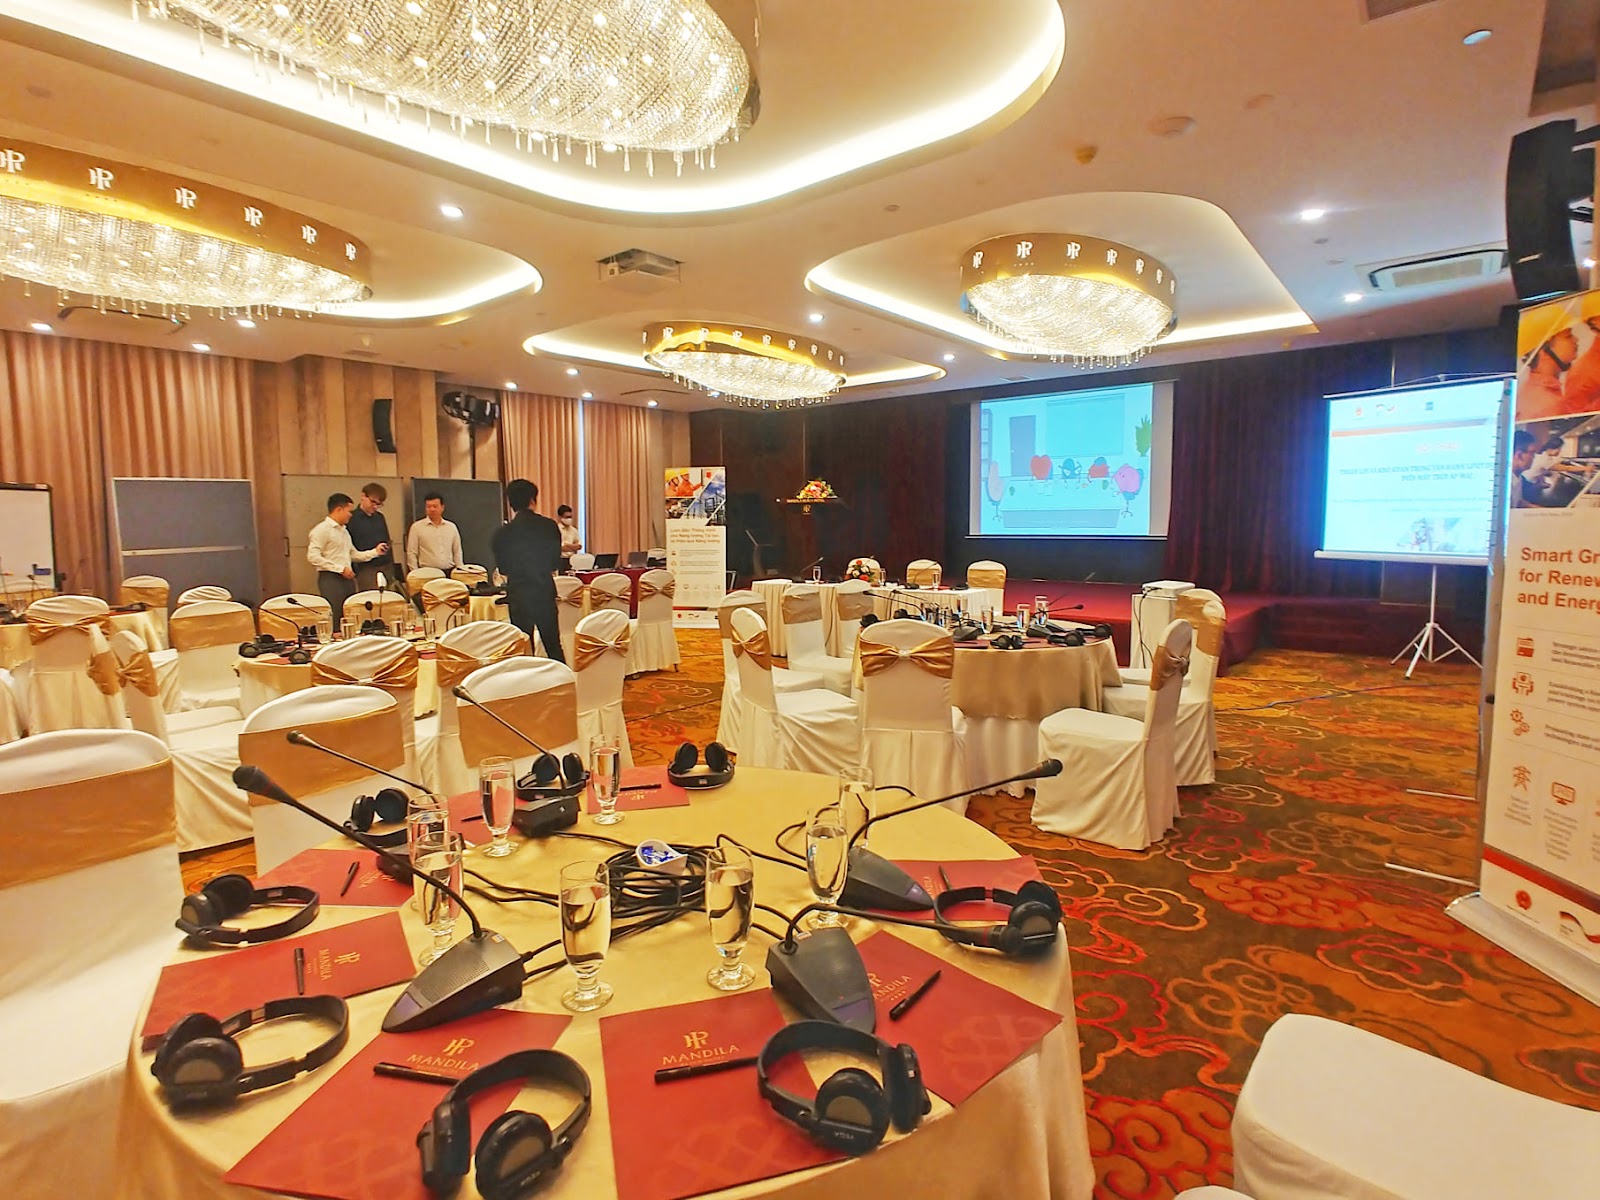 Tổ chức tiệc cho công ty tại khách sạn 4 sao Đà Nẵng Mandila Beach - (2) Trang thiết bị hiện đại tại phòng hội nghị Jasmine